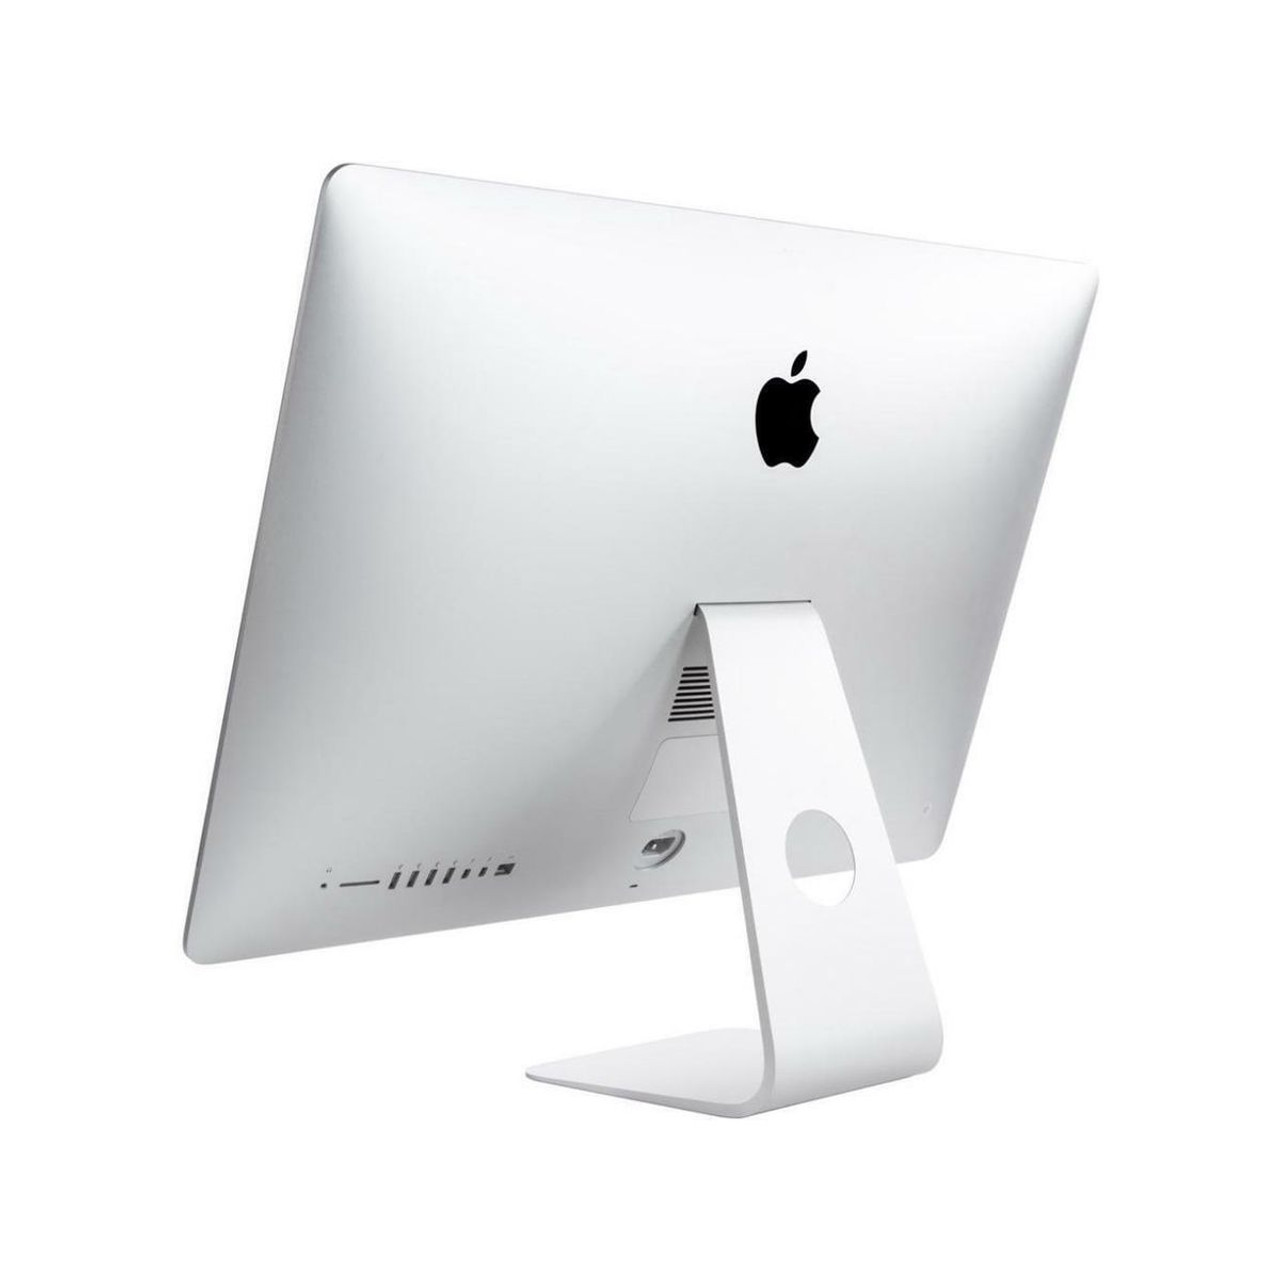 Apple® iMac, 27", 4.2GHz i7, 16GB RAM, 1TB HDD/256GB SSD Fusion, MNEA2LL/A product image